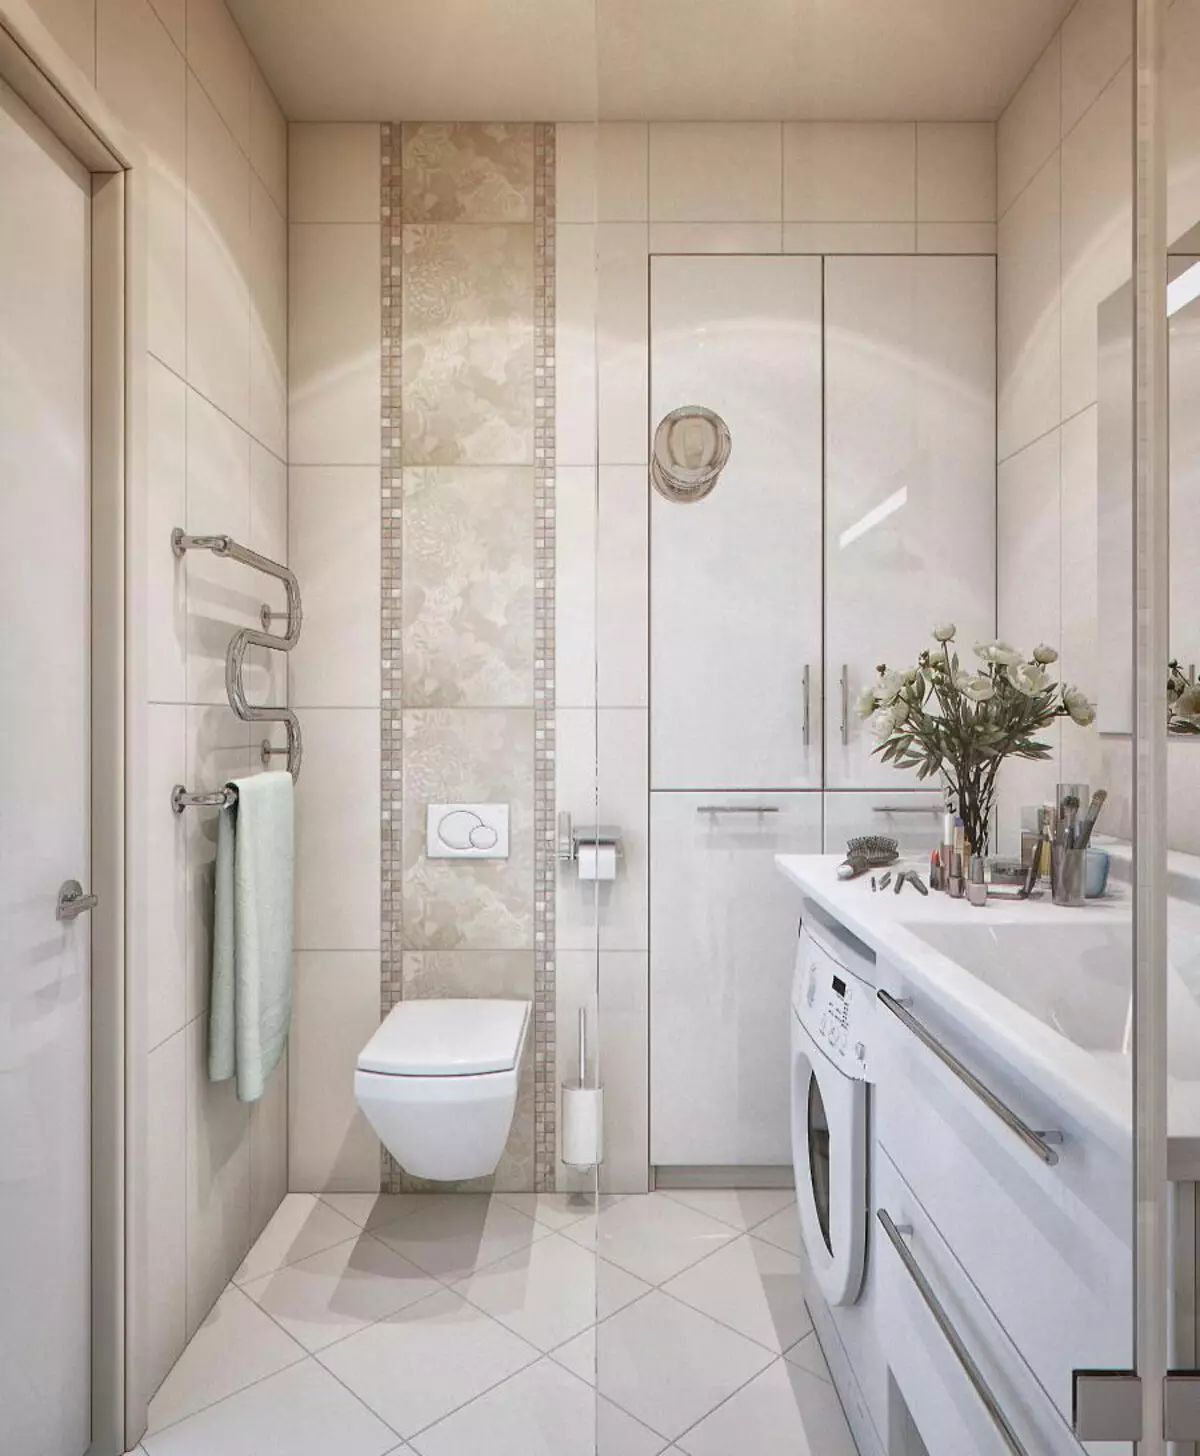 결합 된 욕실 6 평방 미터의 디자인. M (77 사진) : 화장실, 목욕 레이아웃 2 x 3 미터의 인테리어 디자인 10454_6